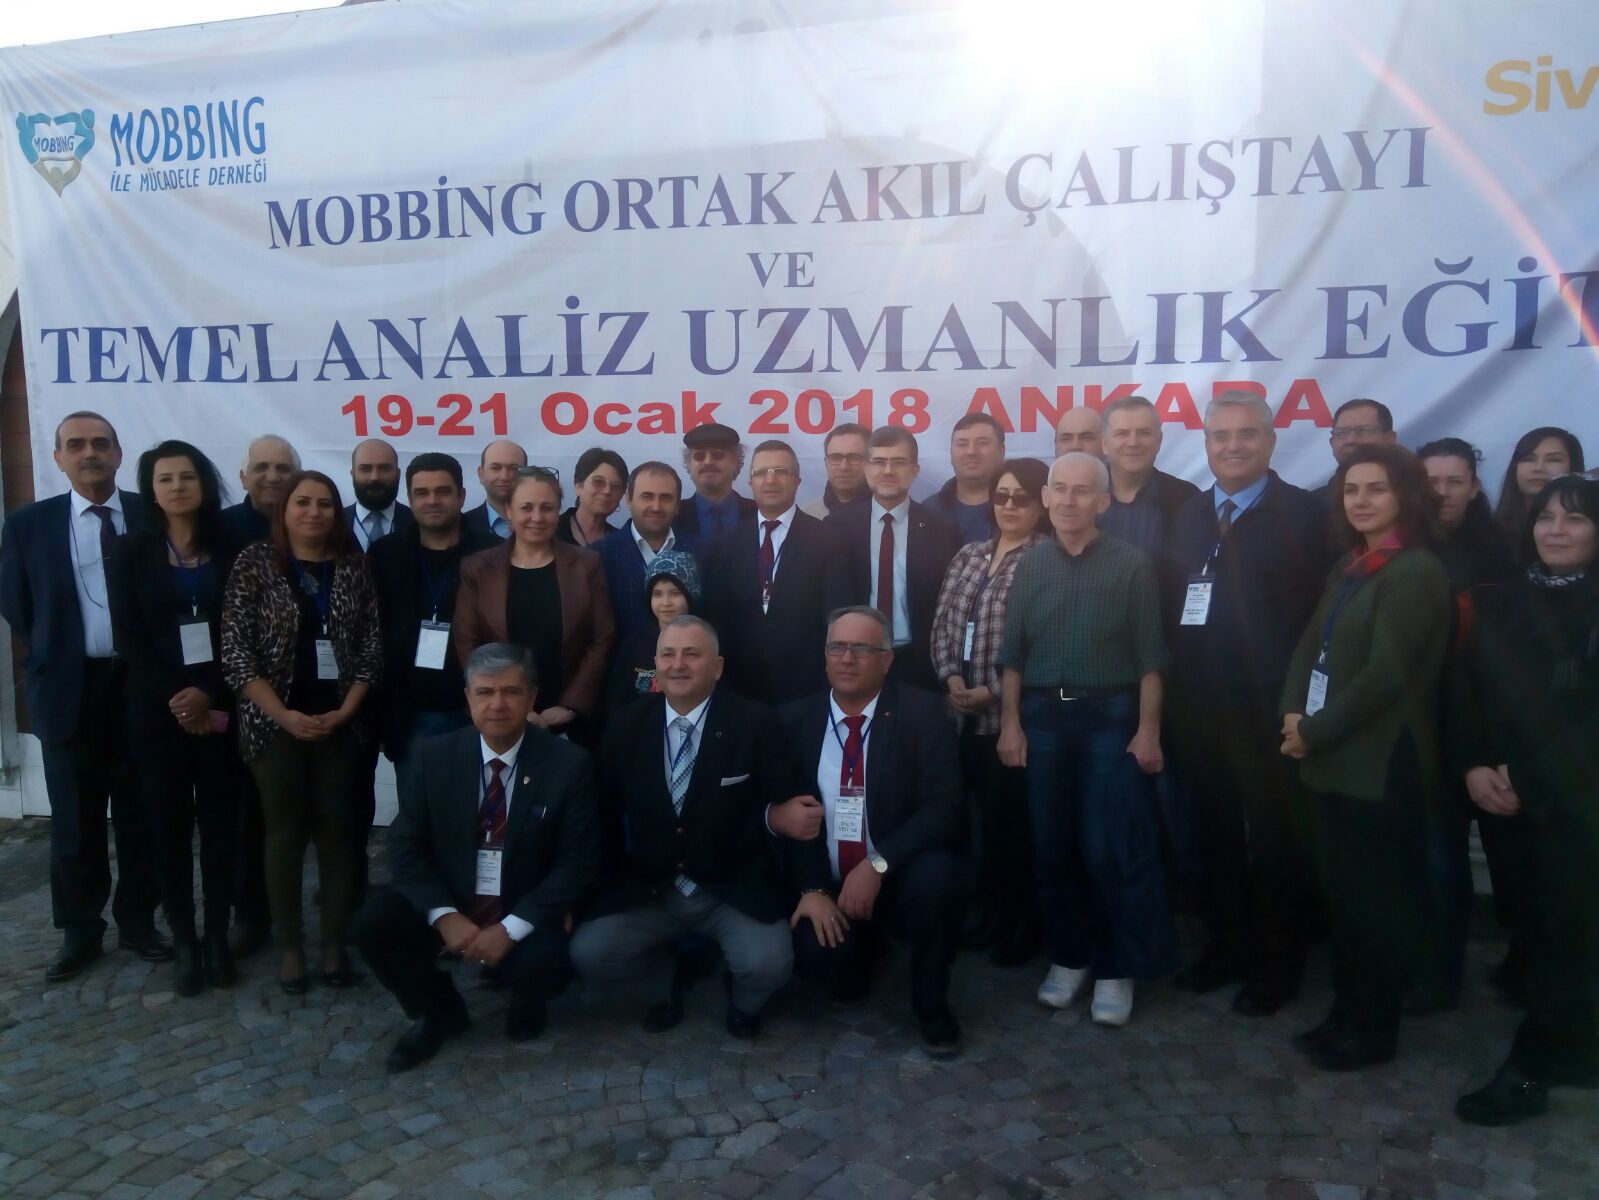 TİHEK Başkanı Süleyman Arslan Mobbing Ortak Akıl Çalıştayı’na Katıldı